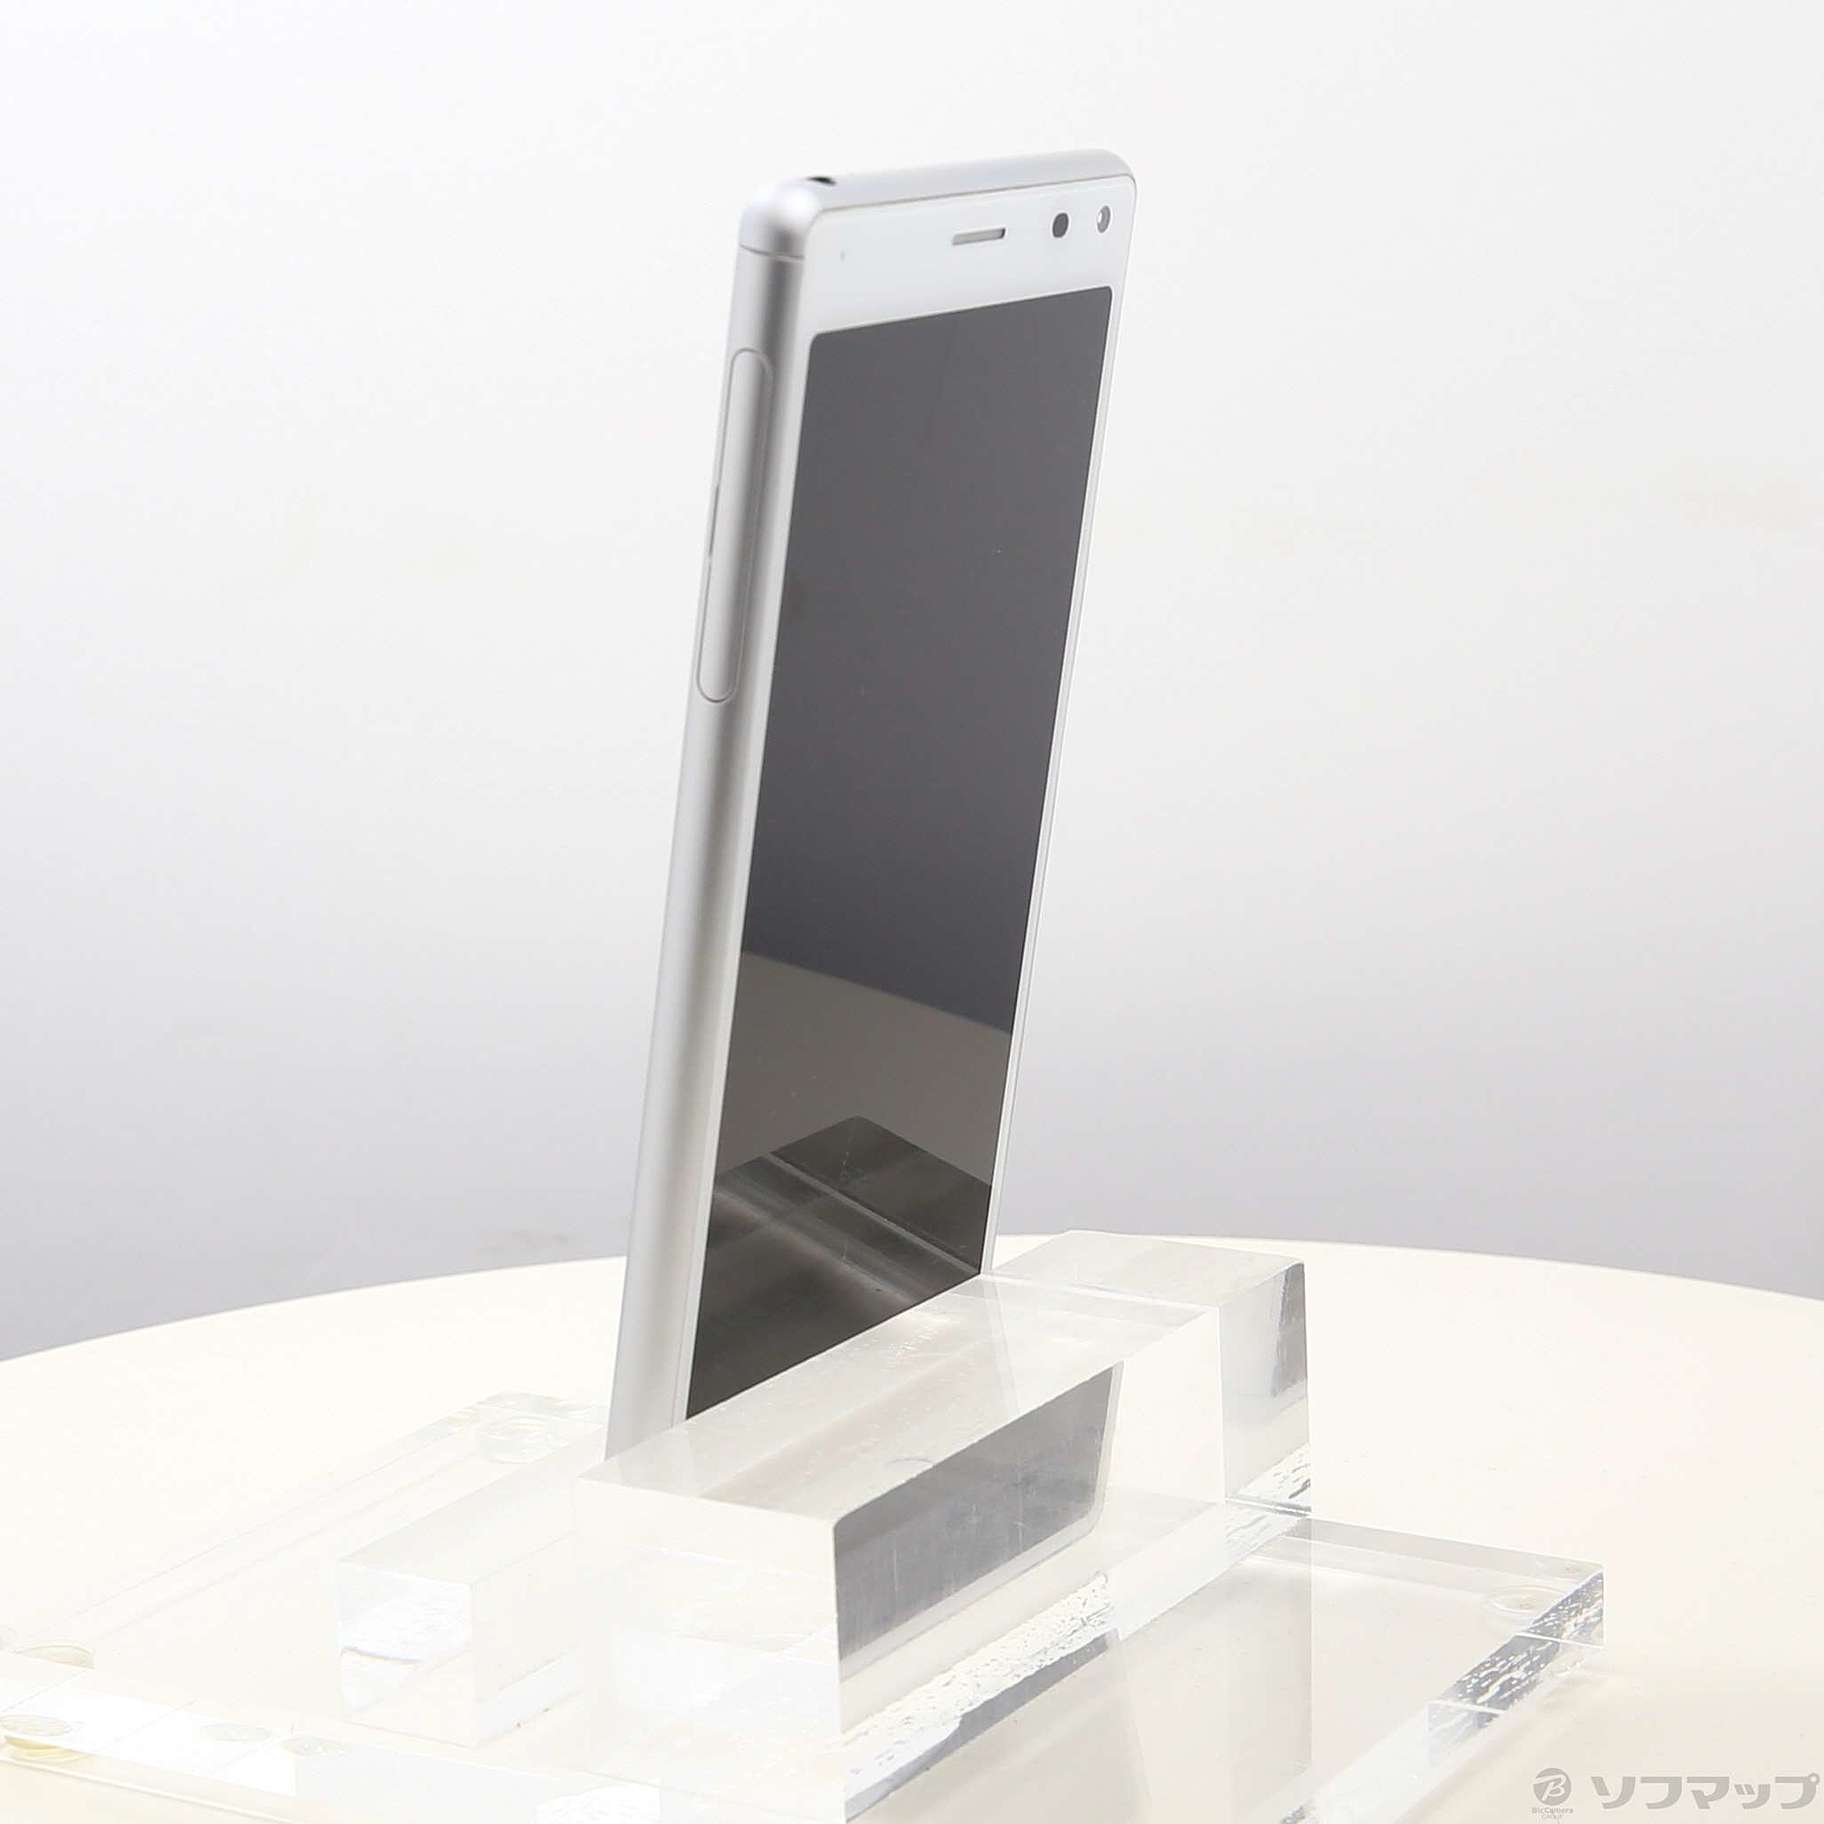 Xperia 8 Lite 64GB ホワイト J3273 SIMフリー